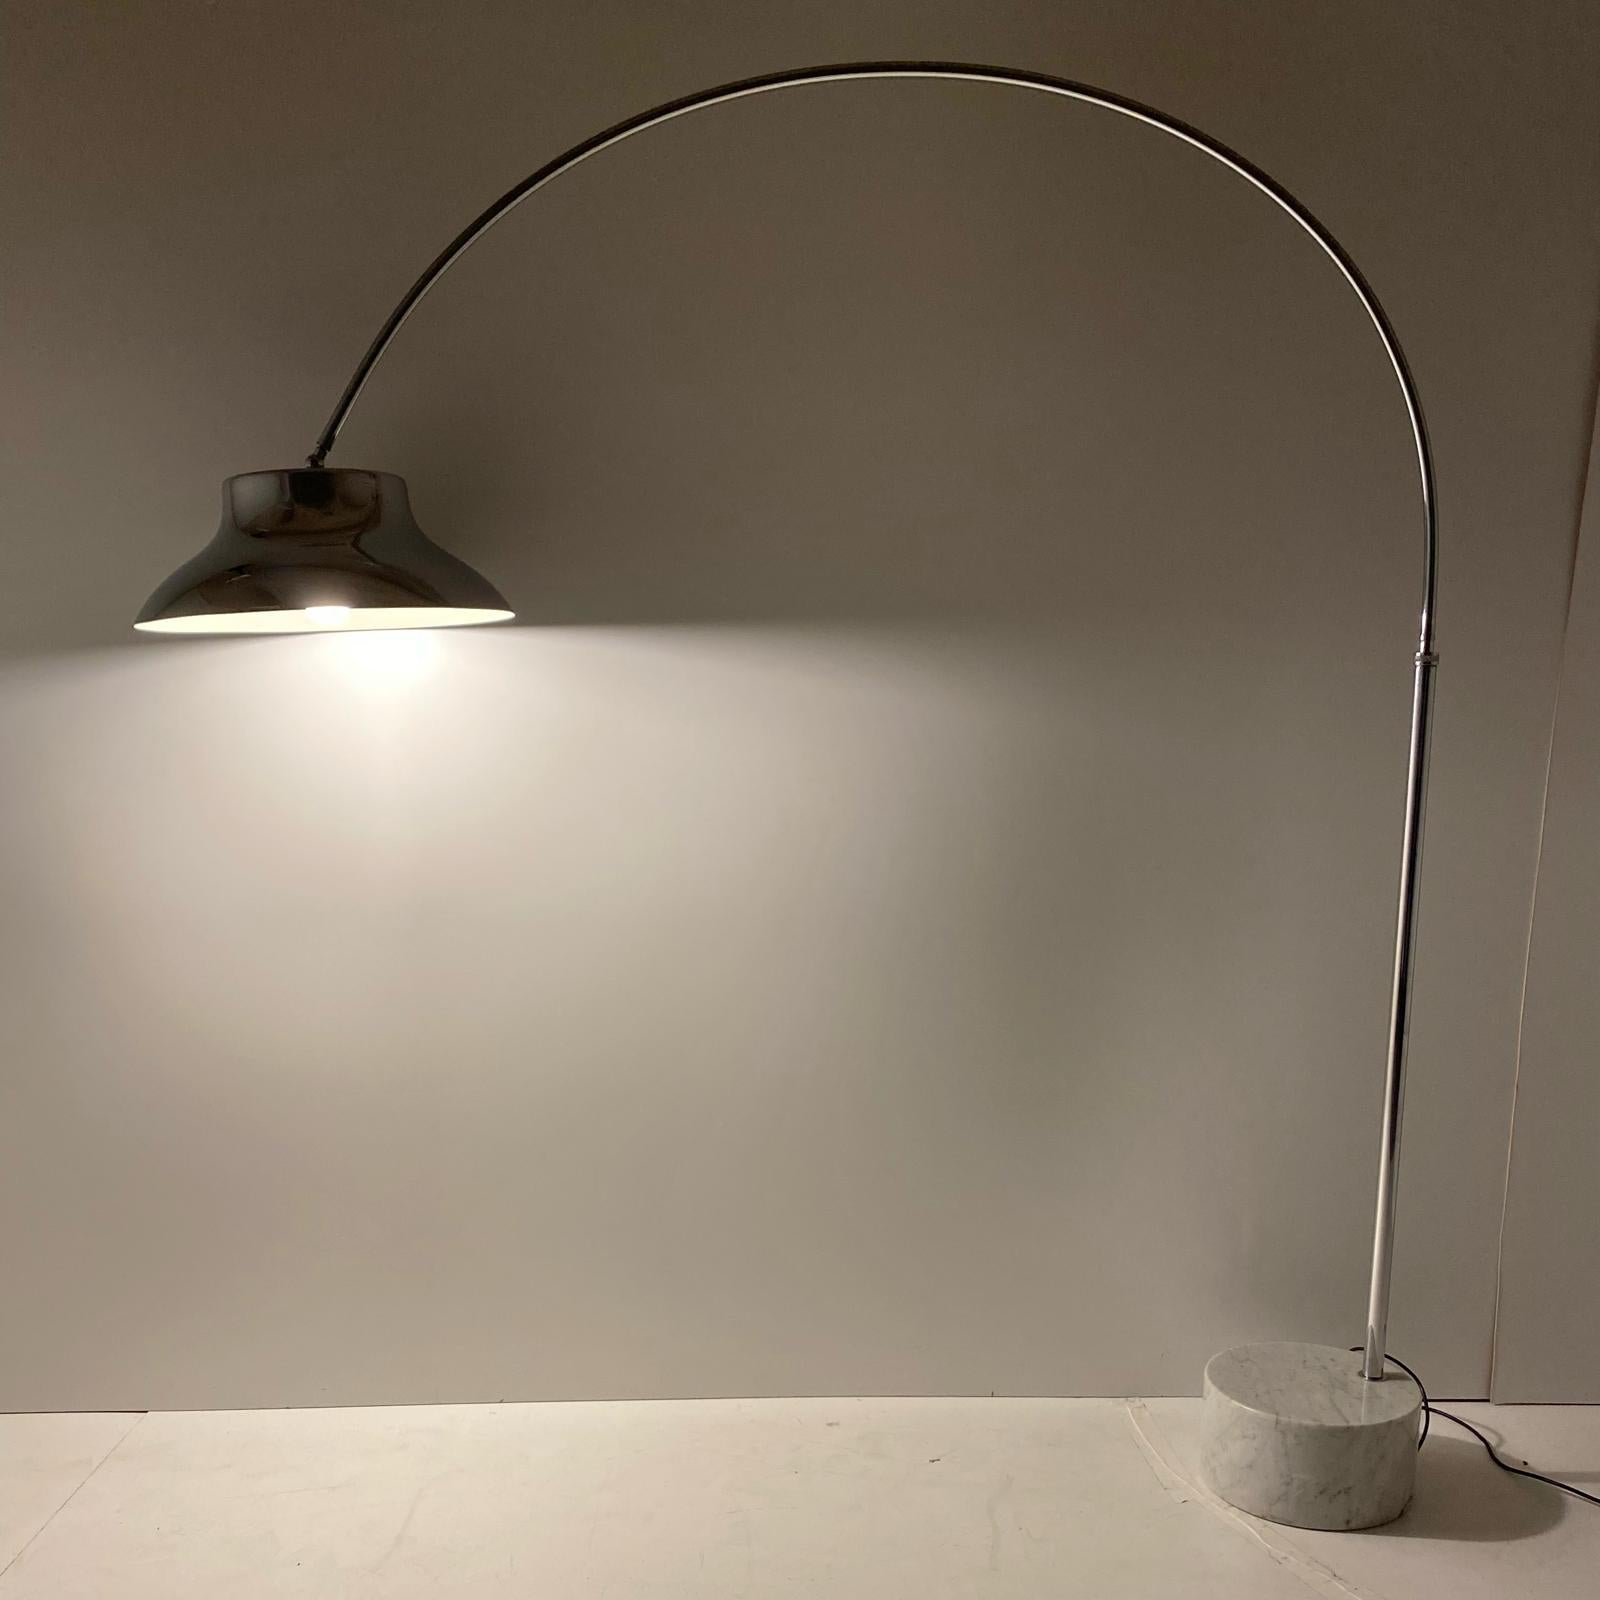 Xetra große verchromte Bogenlampe, hergestellt in Italien in den 1960er Jahren. Sockel aus Carrara-Marmor mit verchromtem Gestell und Schirm.

Flexible und verstellbare Stange, die vor- und zurückbewegt werden kann. Auch die Höhe reicht von